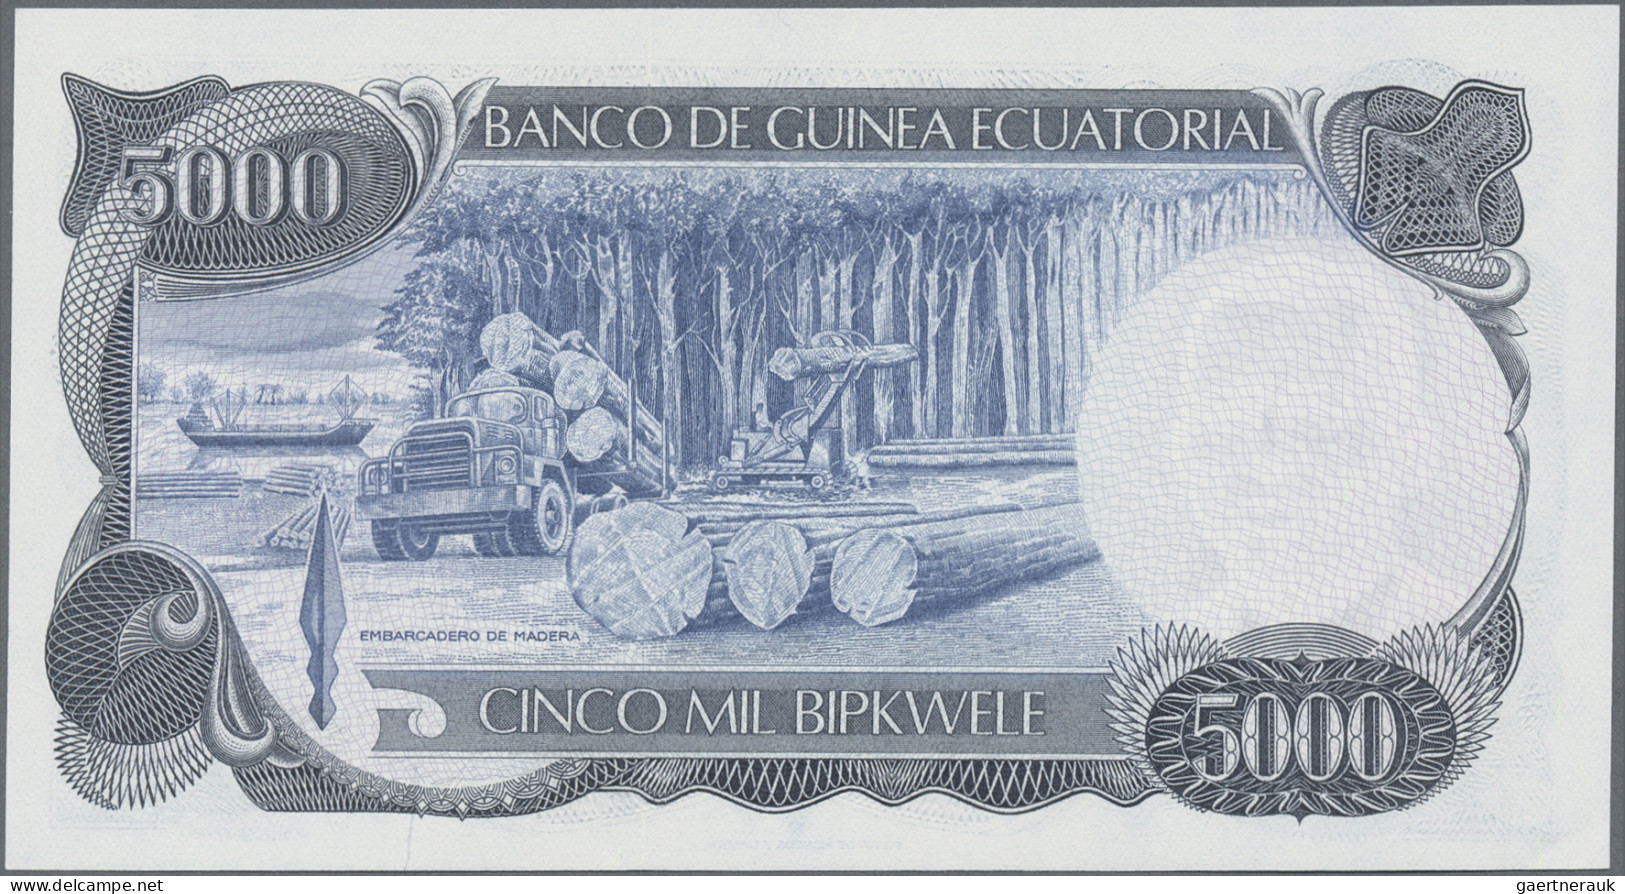 Equatorial Guinea: Banco de Guinea Ecuatorial, lot with 4 banknotes, comprising